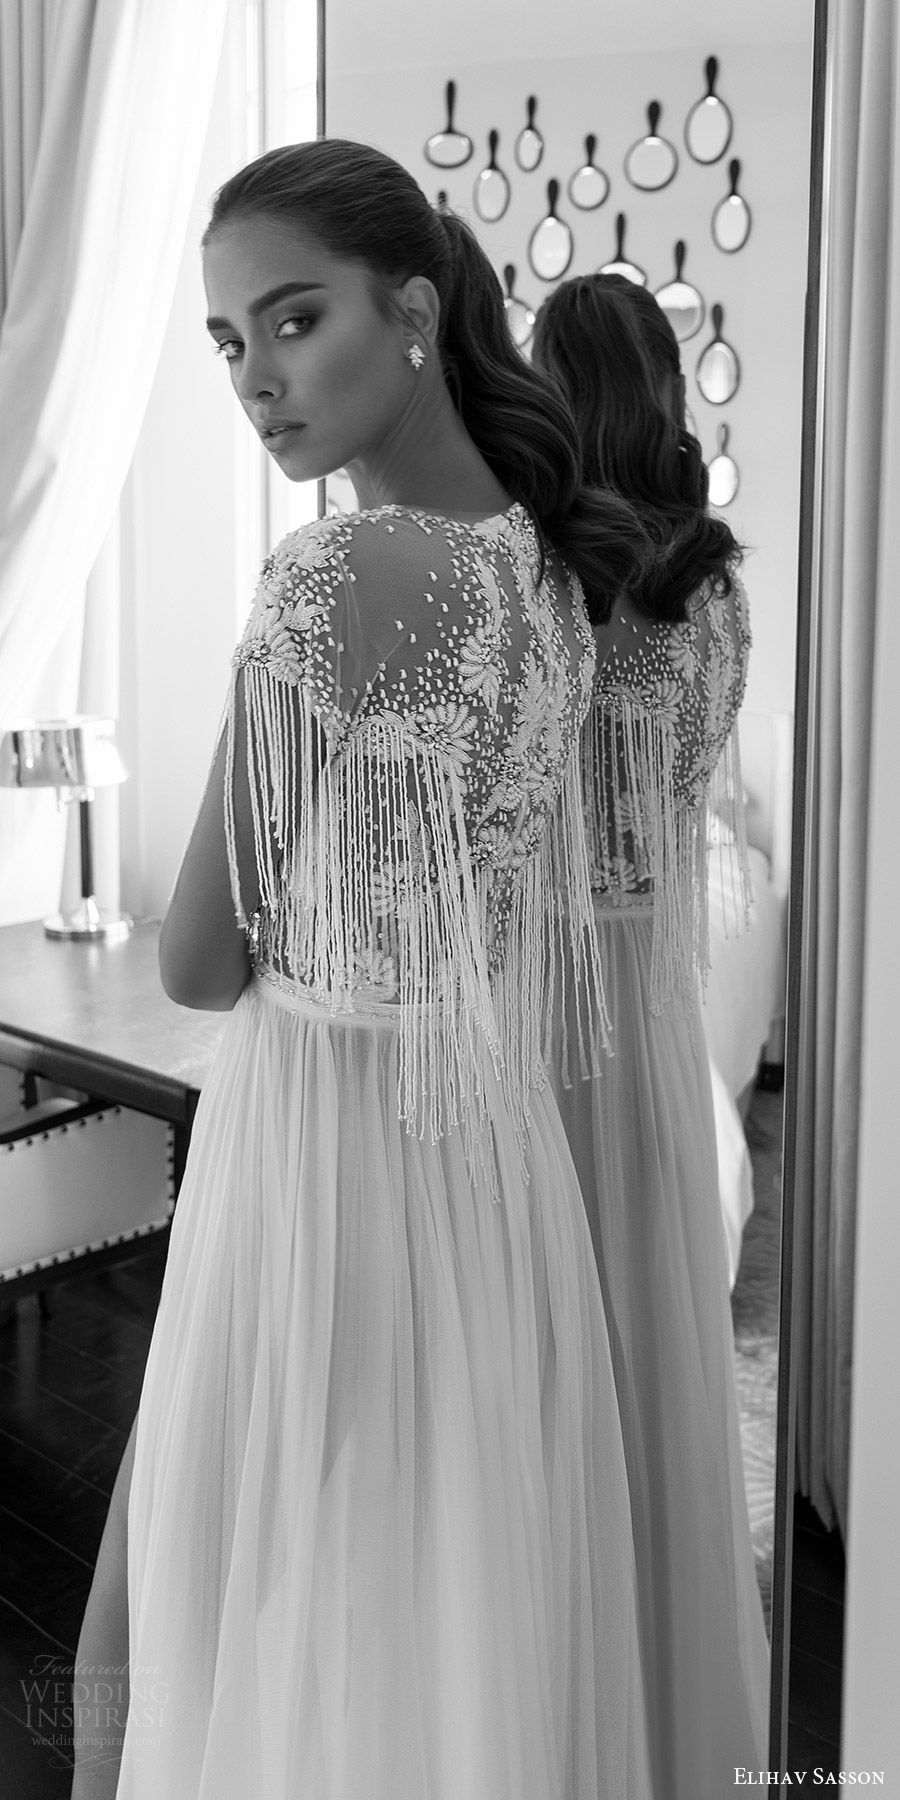 elihav sasson spring 2018 bridal jewel neck cap sleeves fringe beaded bodice a line wedding dress (vj 01) slit skirt bv boho